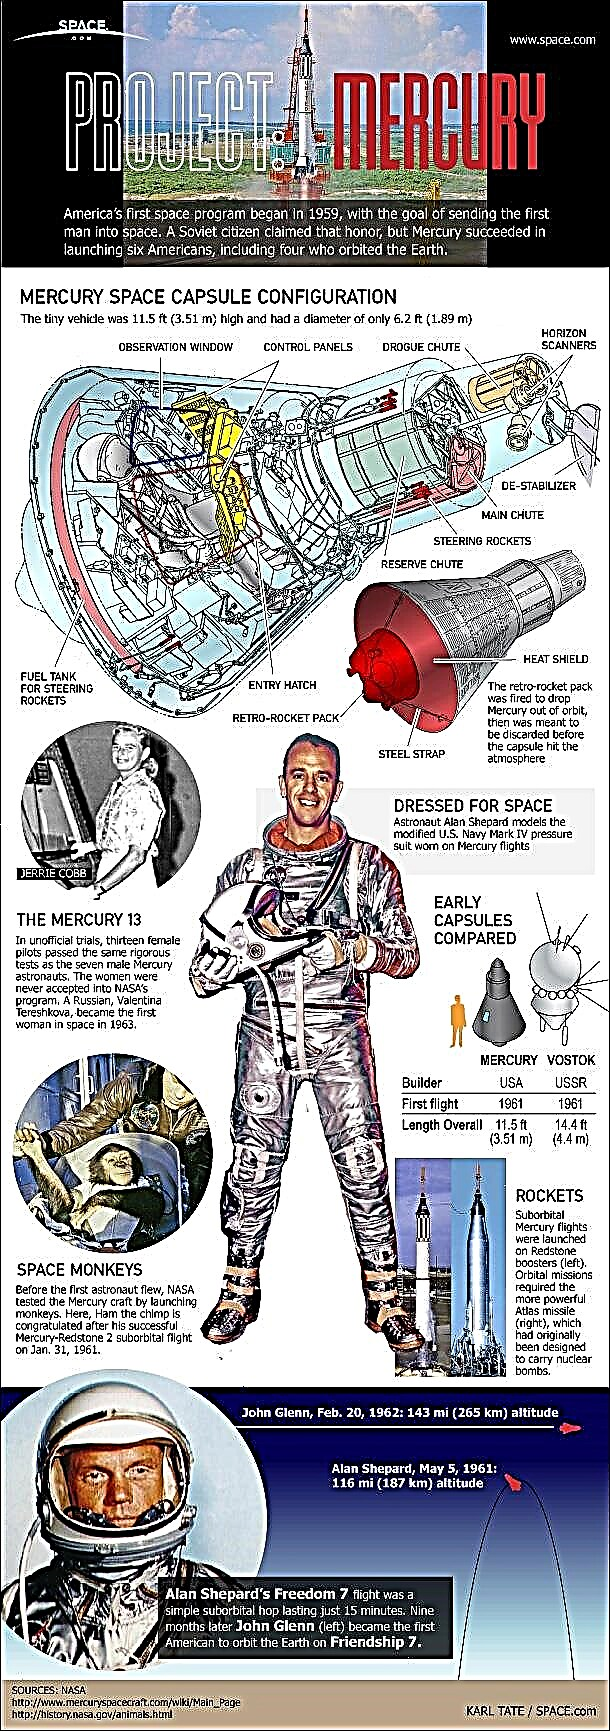 Projekt Mercury: 1. amerykański program kosmiczny dla załogi